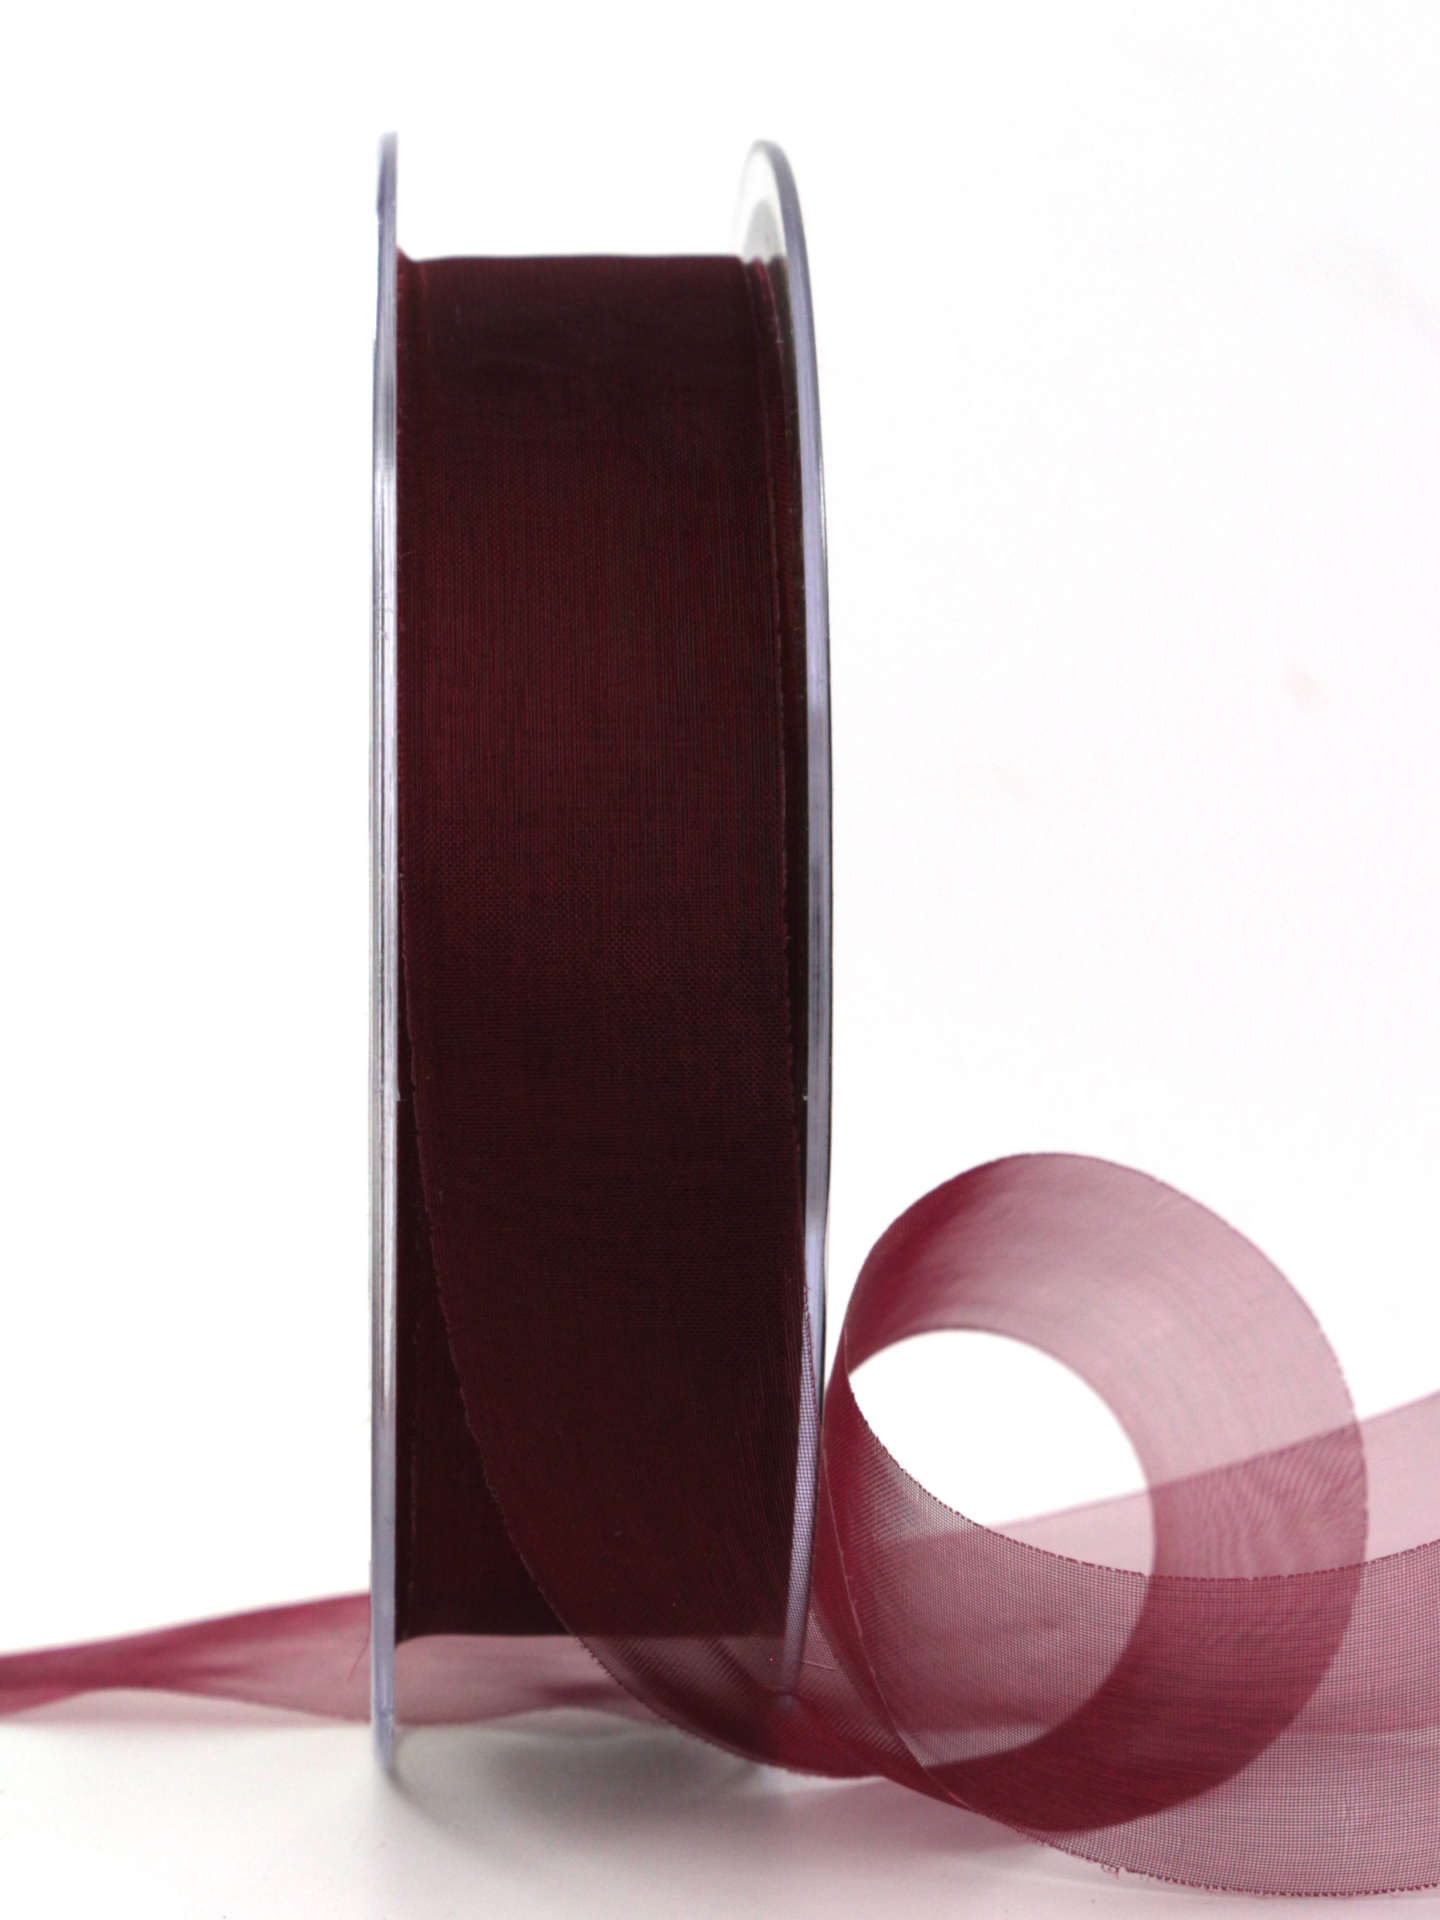 Organzaband mit Schnittkante, bordeaux, 25 mm breit, 45 m Rolle - organzaband-einfarbig, sonderangebot, schnittkante, organzaband